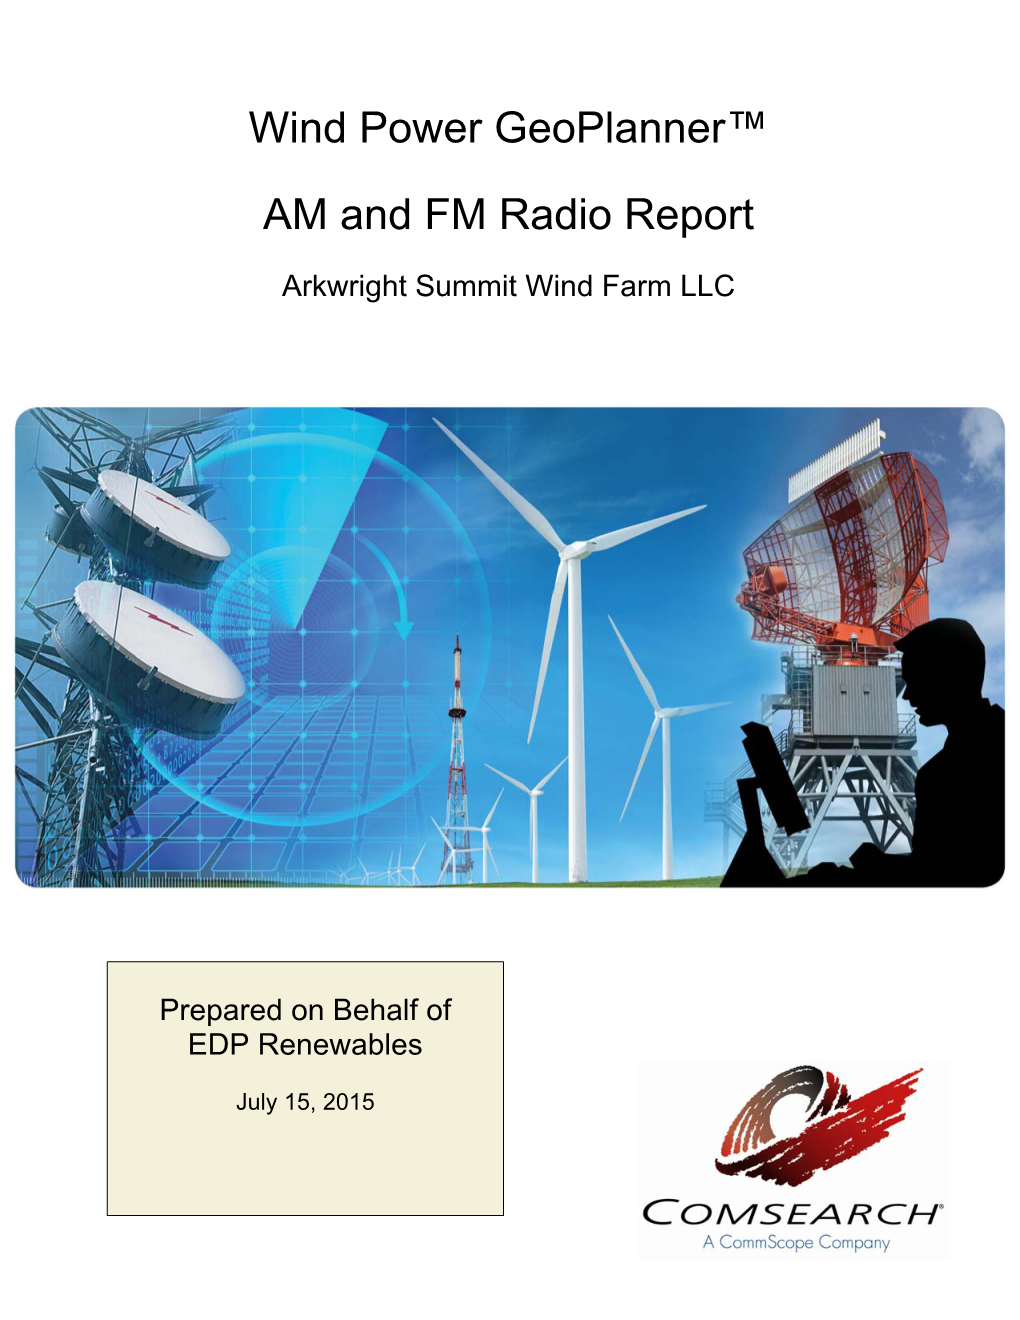 Wind Power Geoplanner™ AM and FM Radio Report Arkwright Summmit Wind Farm LLC